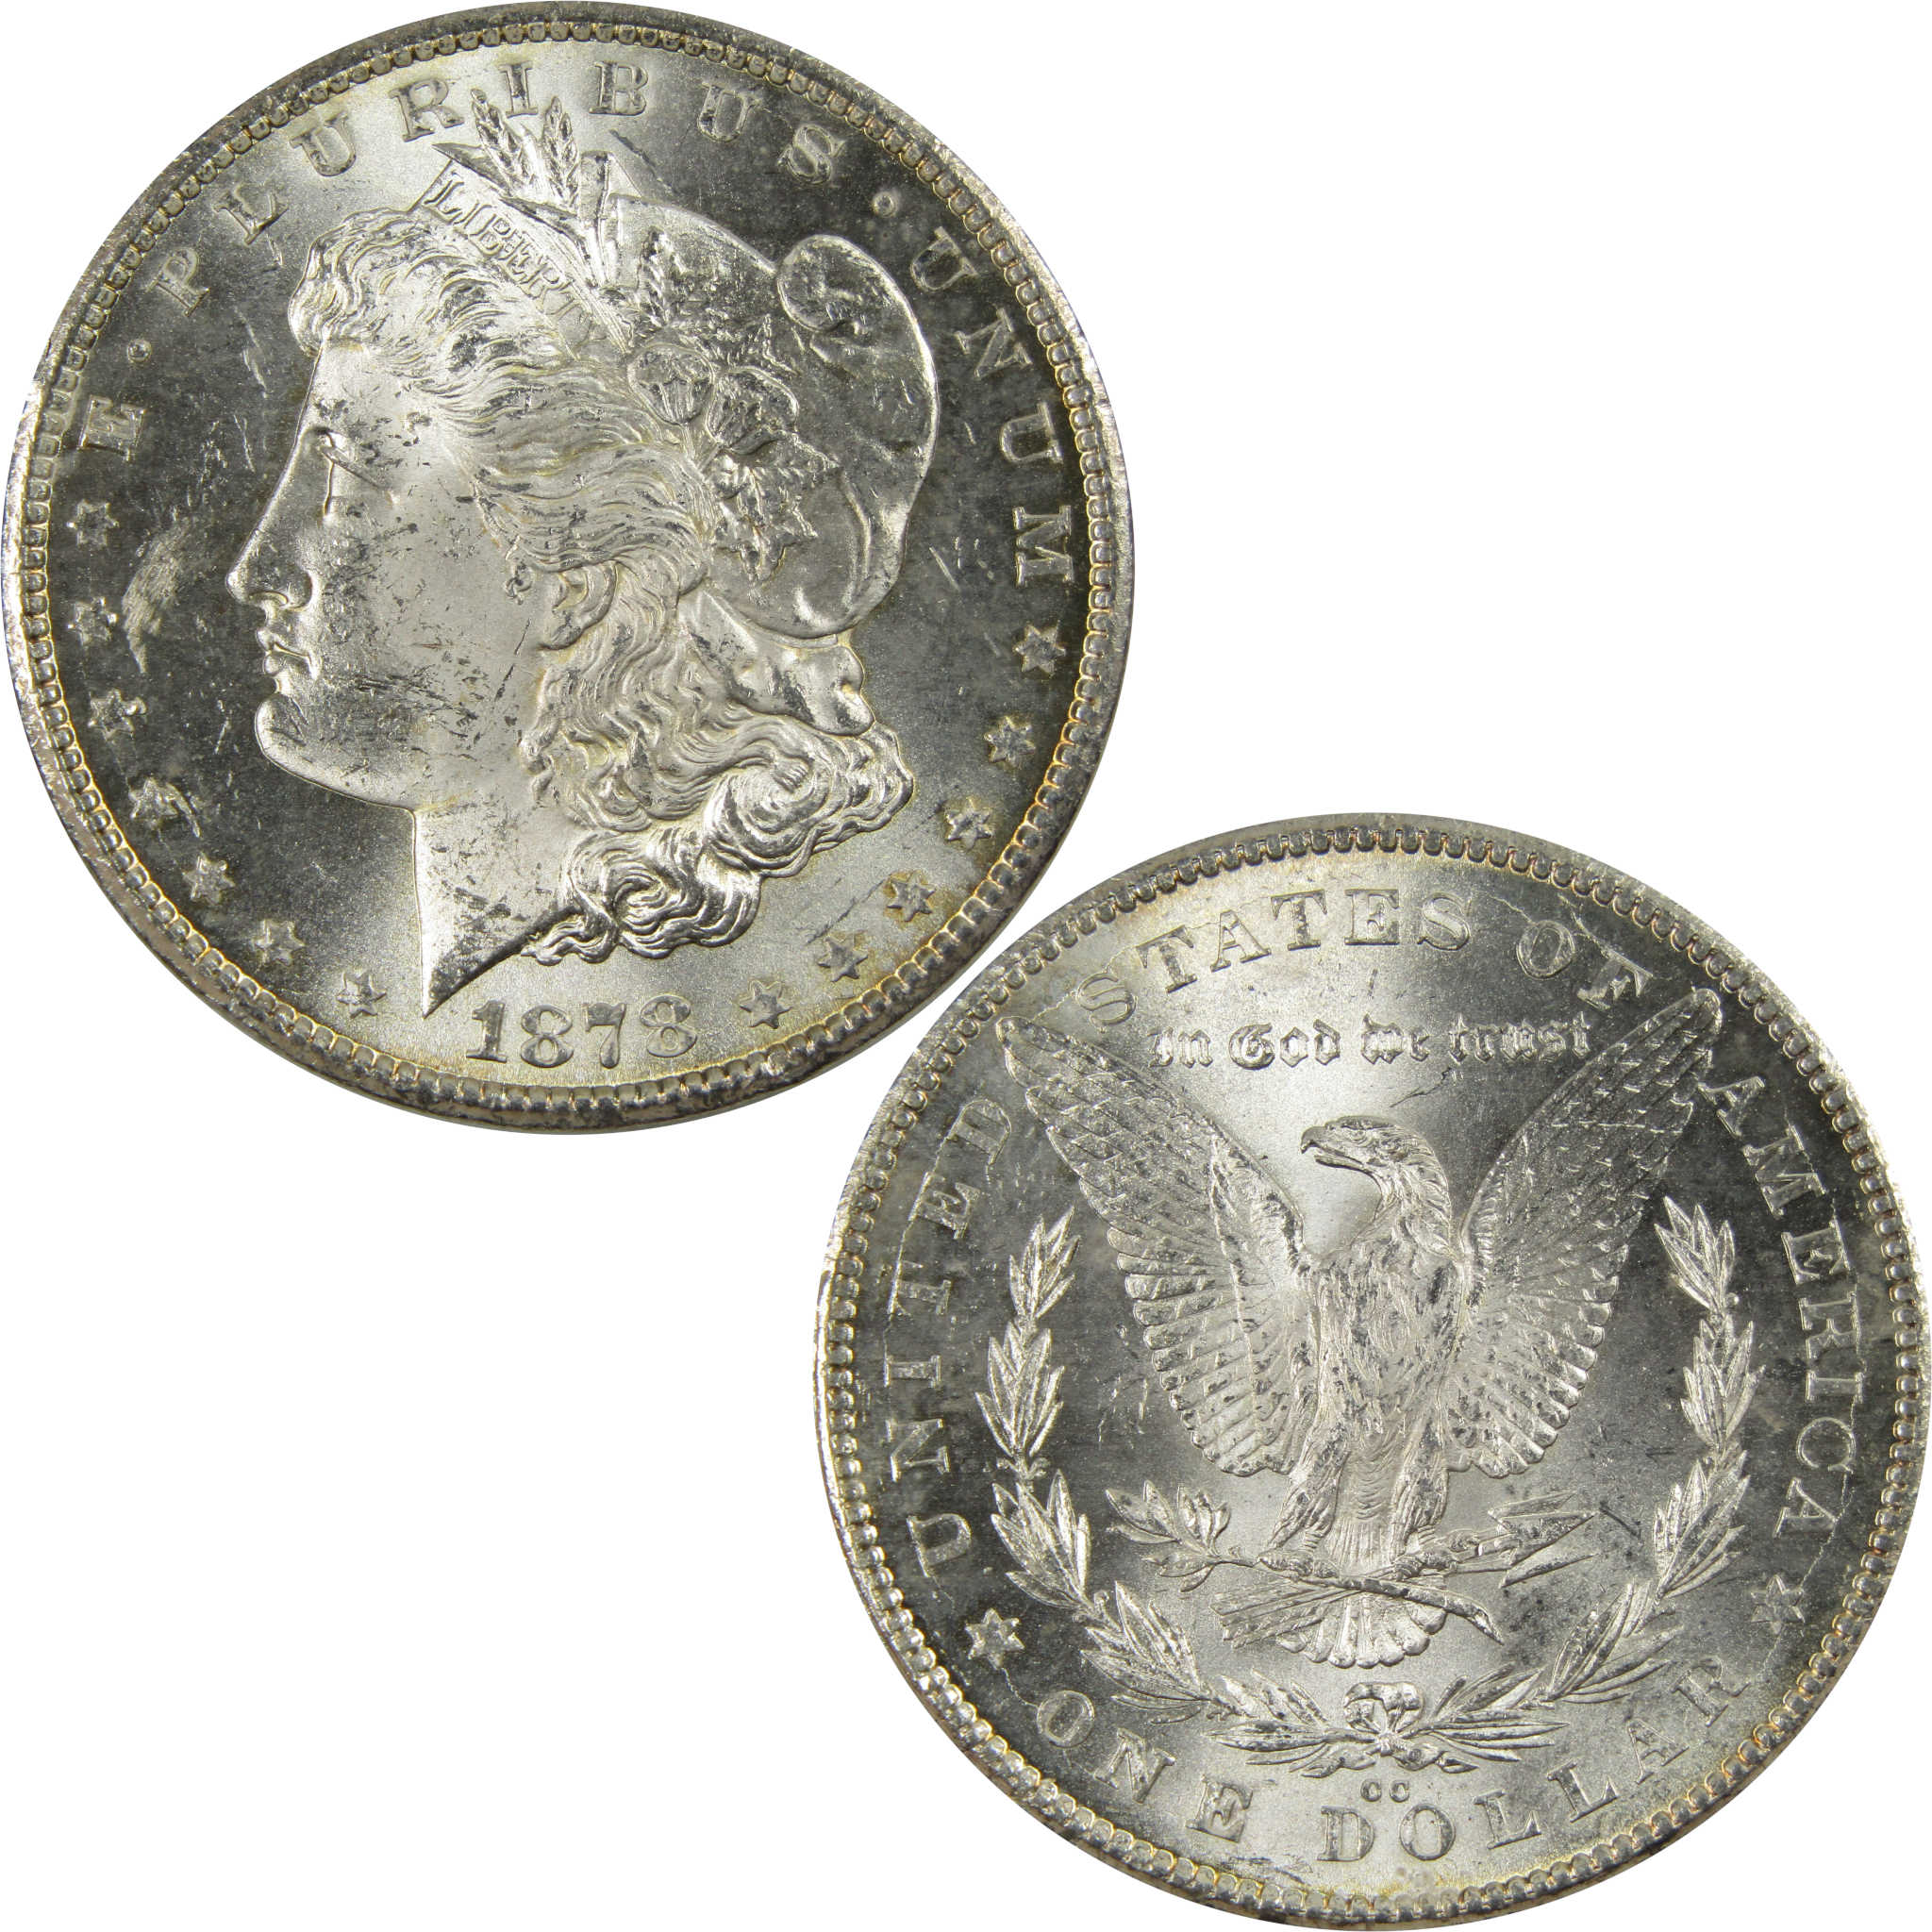 1878 CC Morgan Dollar BU Uncirculated 90% Silver $1 Coin SKU:I7790 - Morgan coin - Morgan silver dollar - Morgan silver dollar for sale - Profile Coins &amp; Collectibles